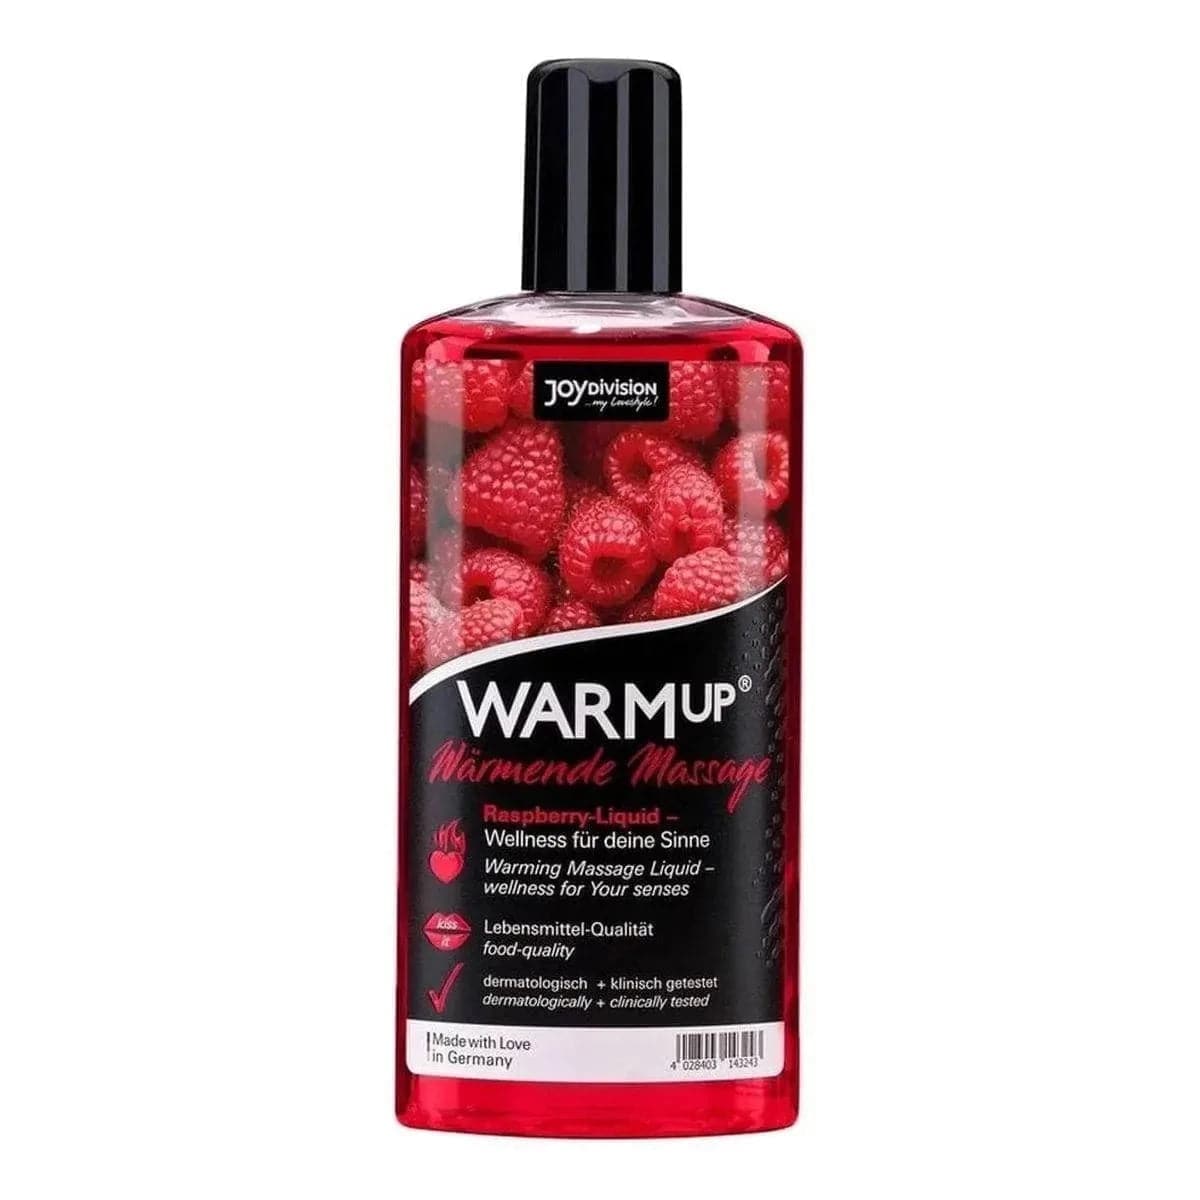 WARMup - Óleo Massagem Comestível Framboesa 150ml - Aquecimento e Aroma de Fruta  JoyDivision   